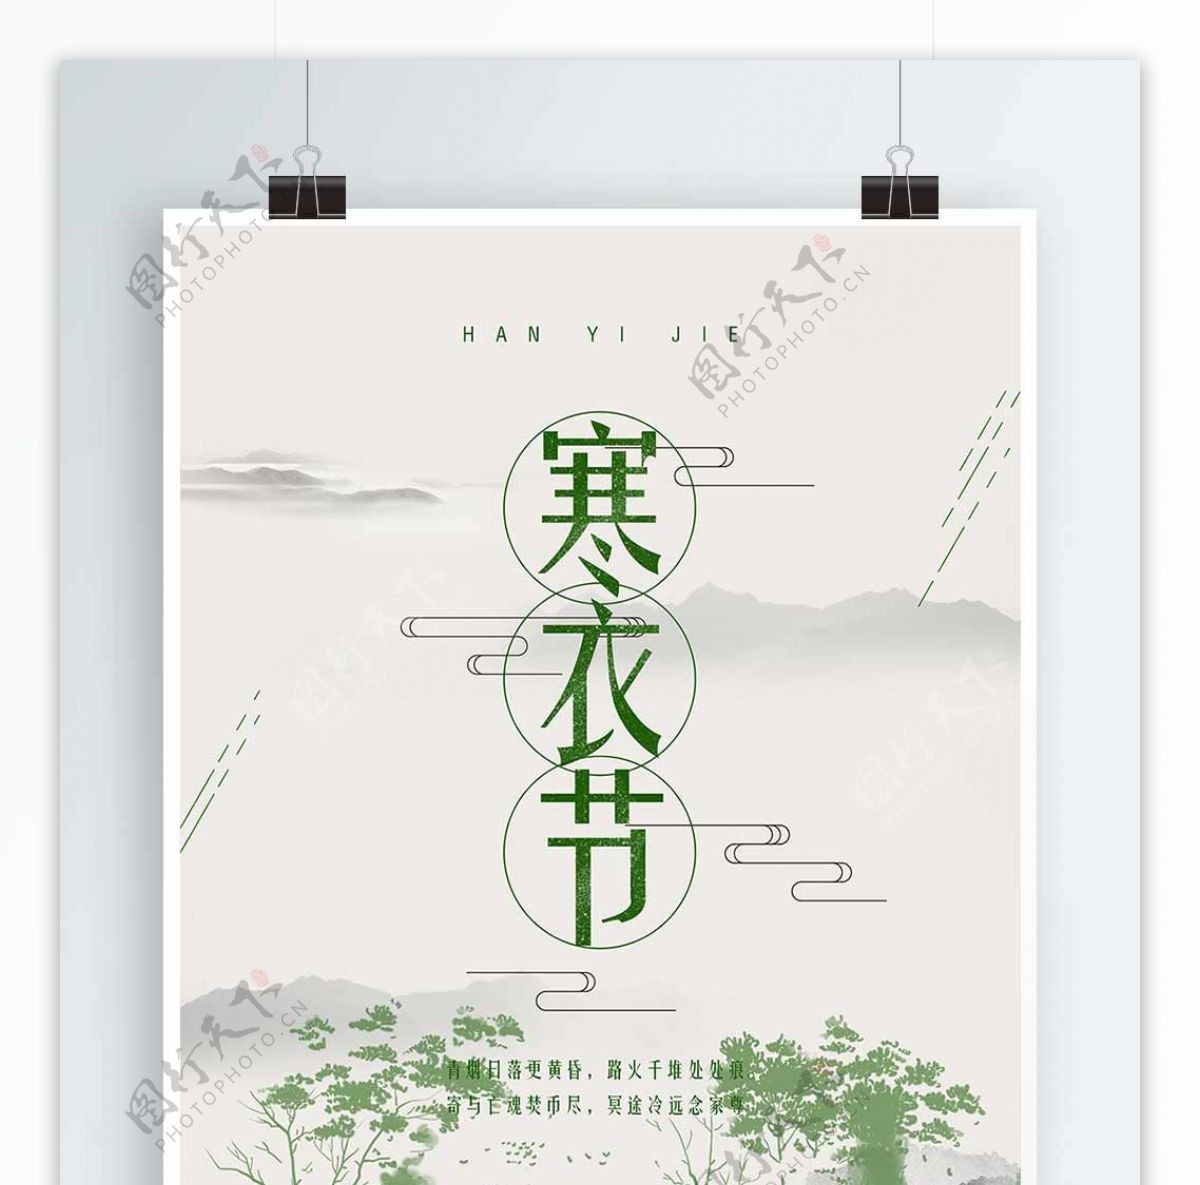 简约中国风寒衣节文化宣传海报设计